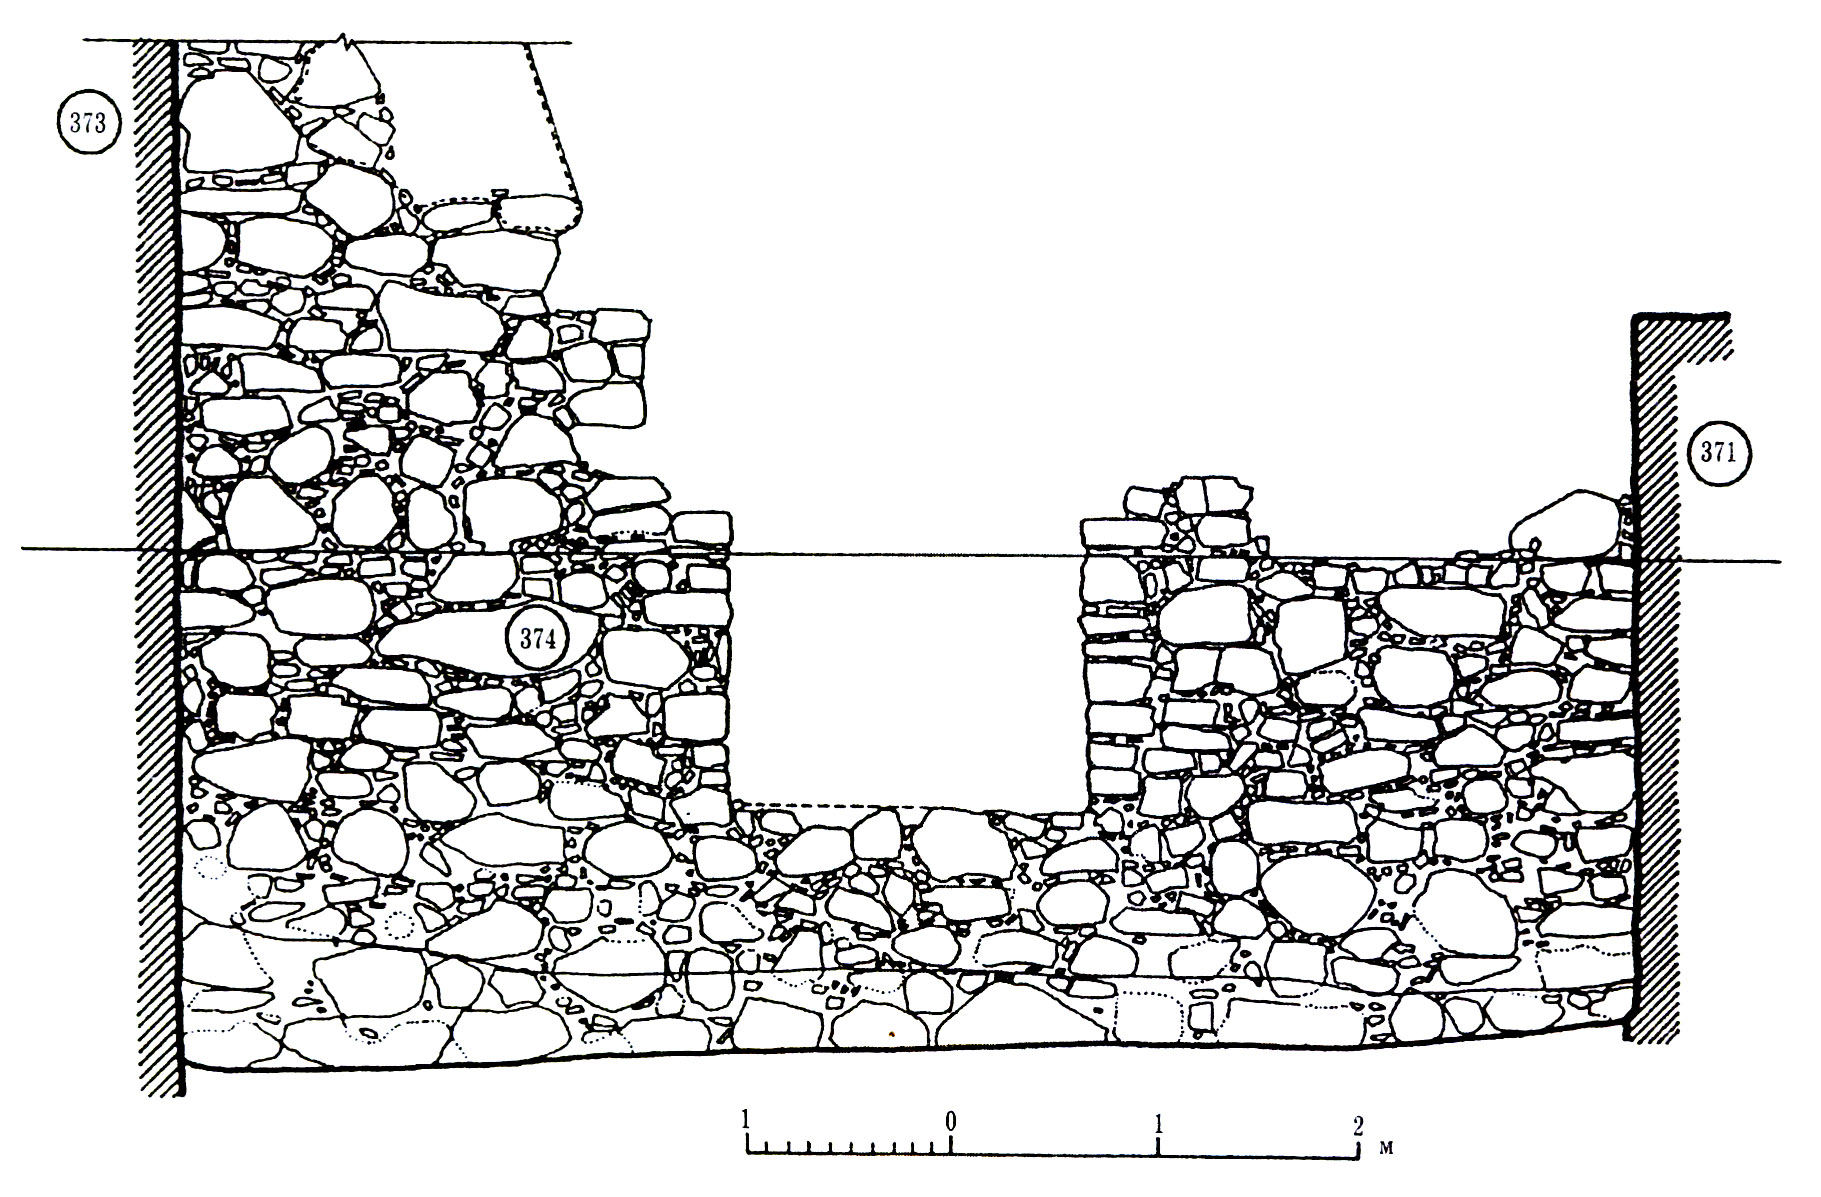 Рис. 4. Юго-восточная стена башни Орта-Куле (кл. 374) с амбразурой «подножного» боя. Вид с северо-запада.